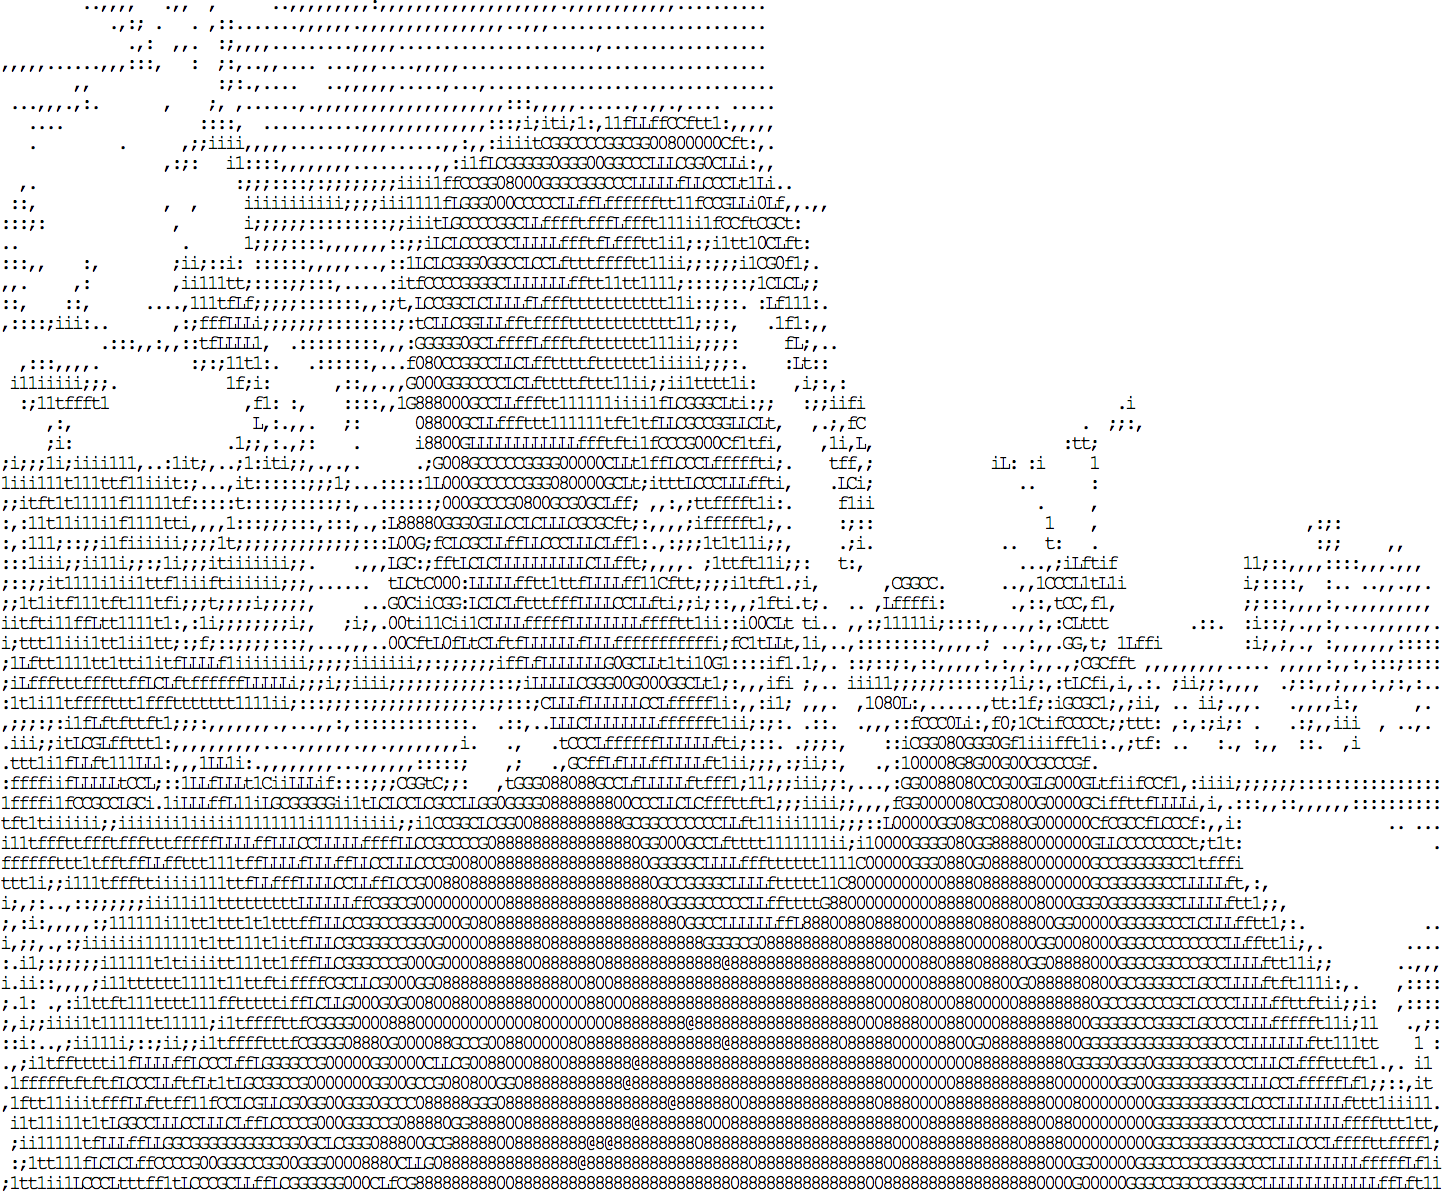 idevelop.ro/ascii-camera 產生的 ASCII 圖像